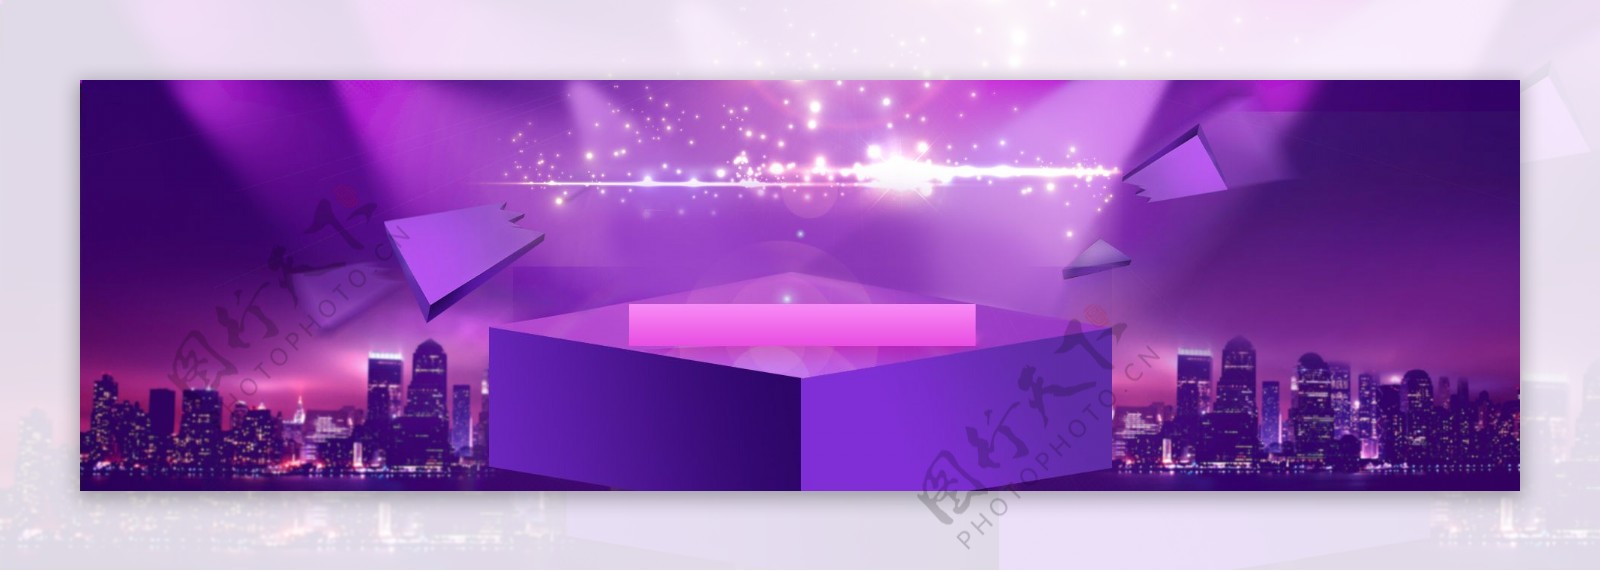 紫色活动背景图